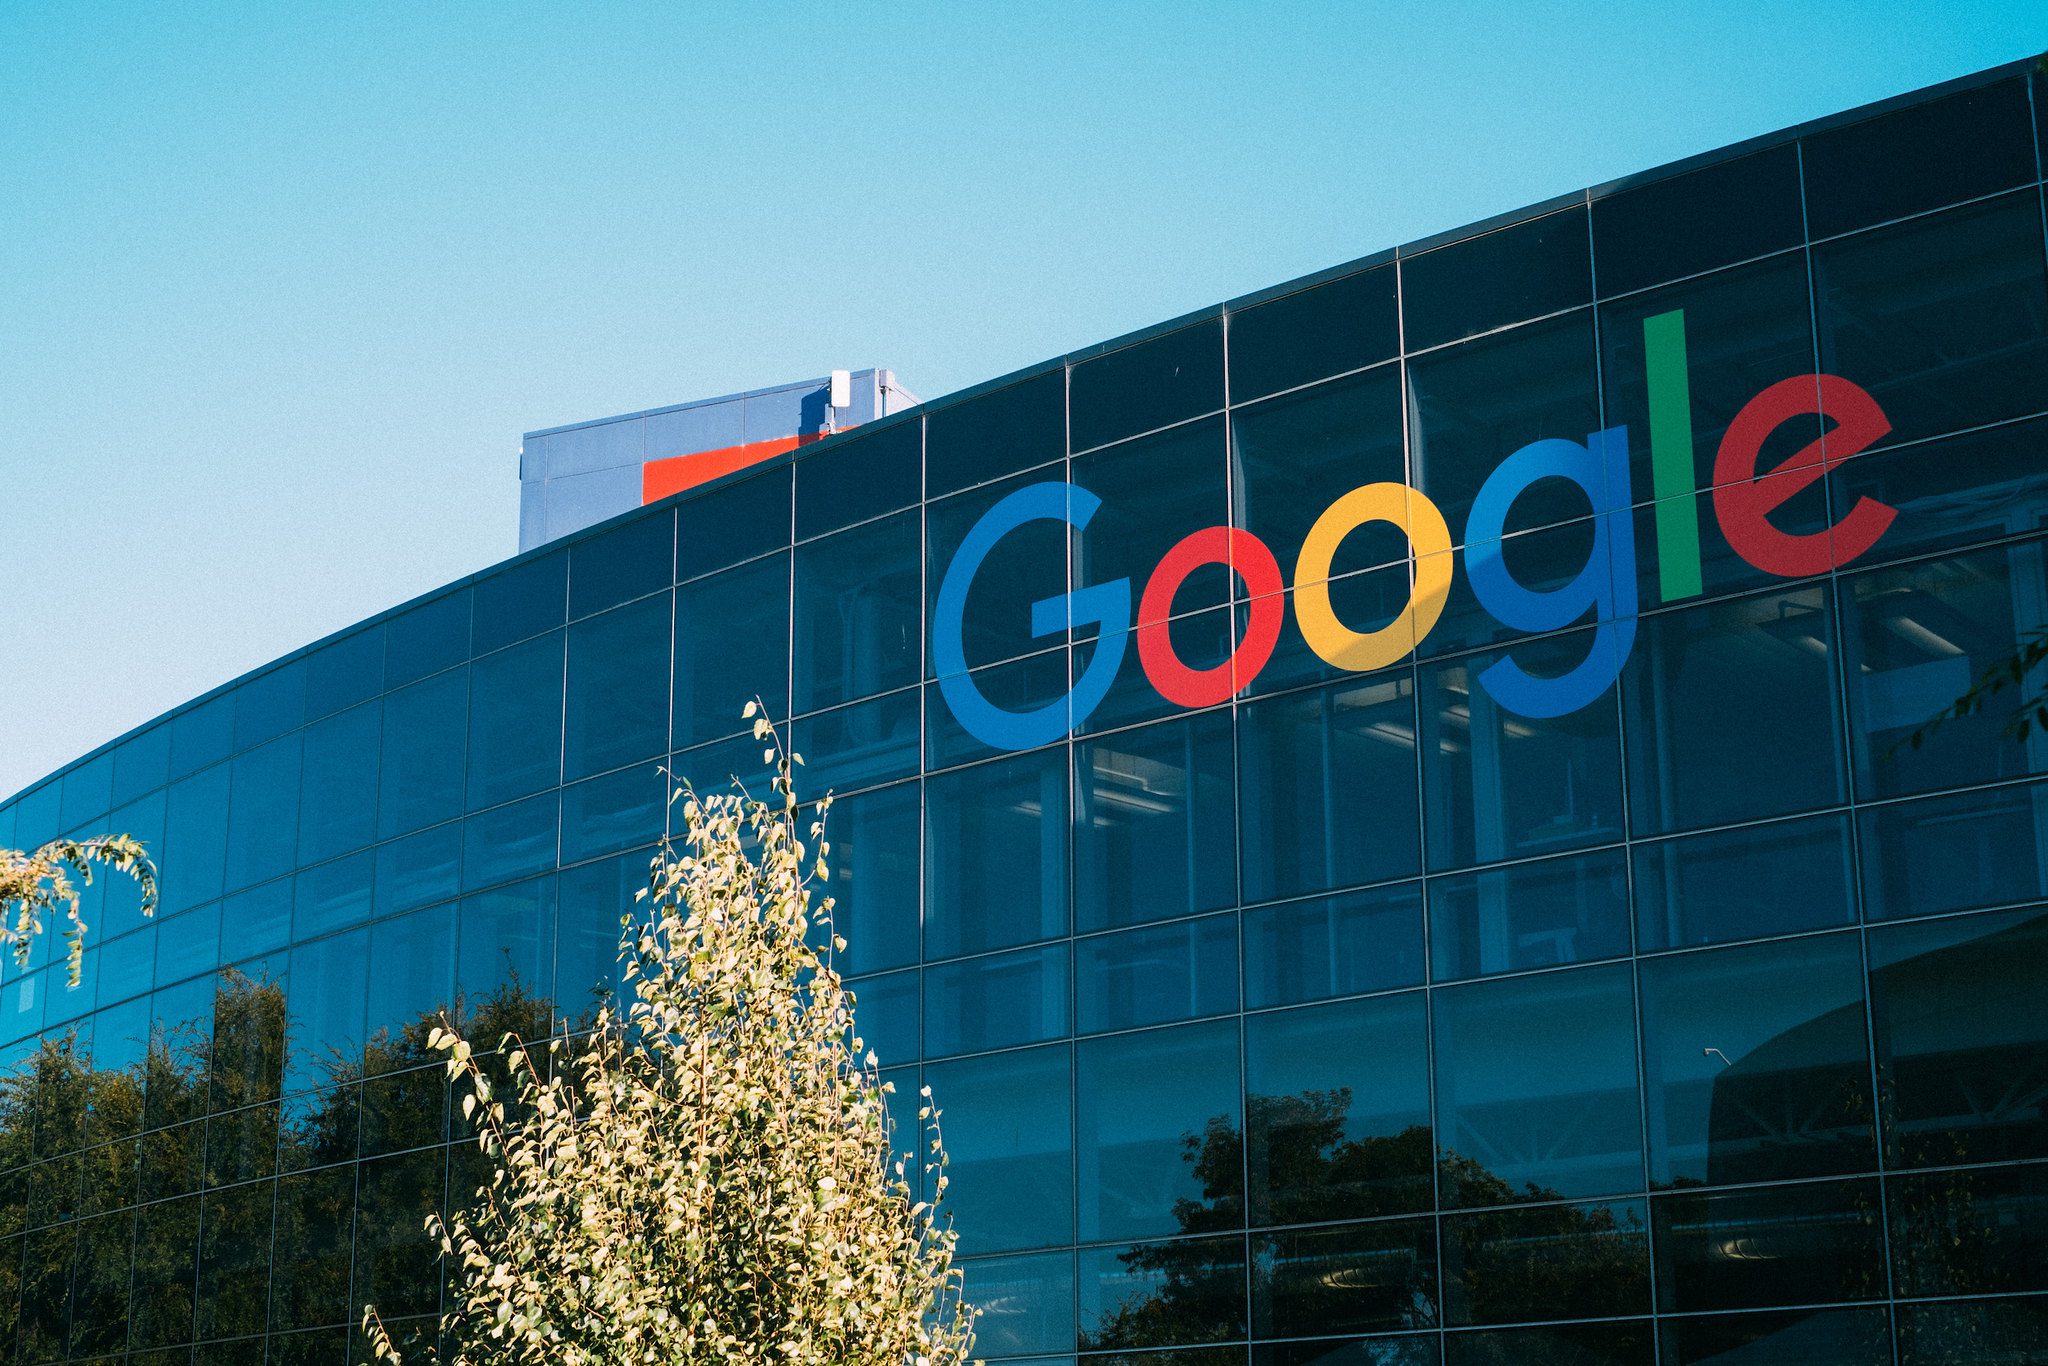 Google scoort rechtbankoverwinning in zaak wegens vermeende concurrentiebeperkende vooringenomenheid